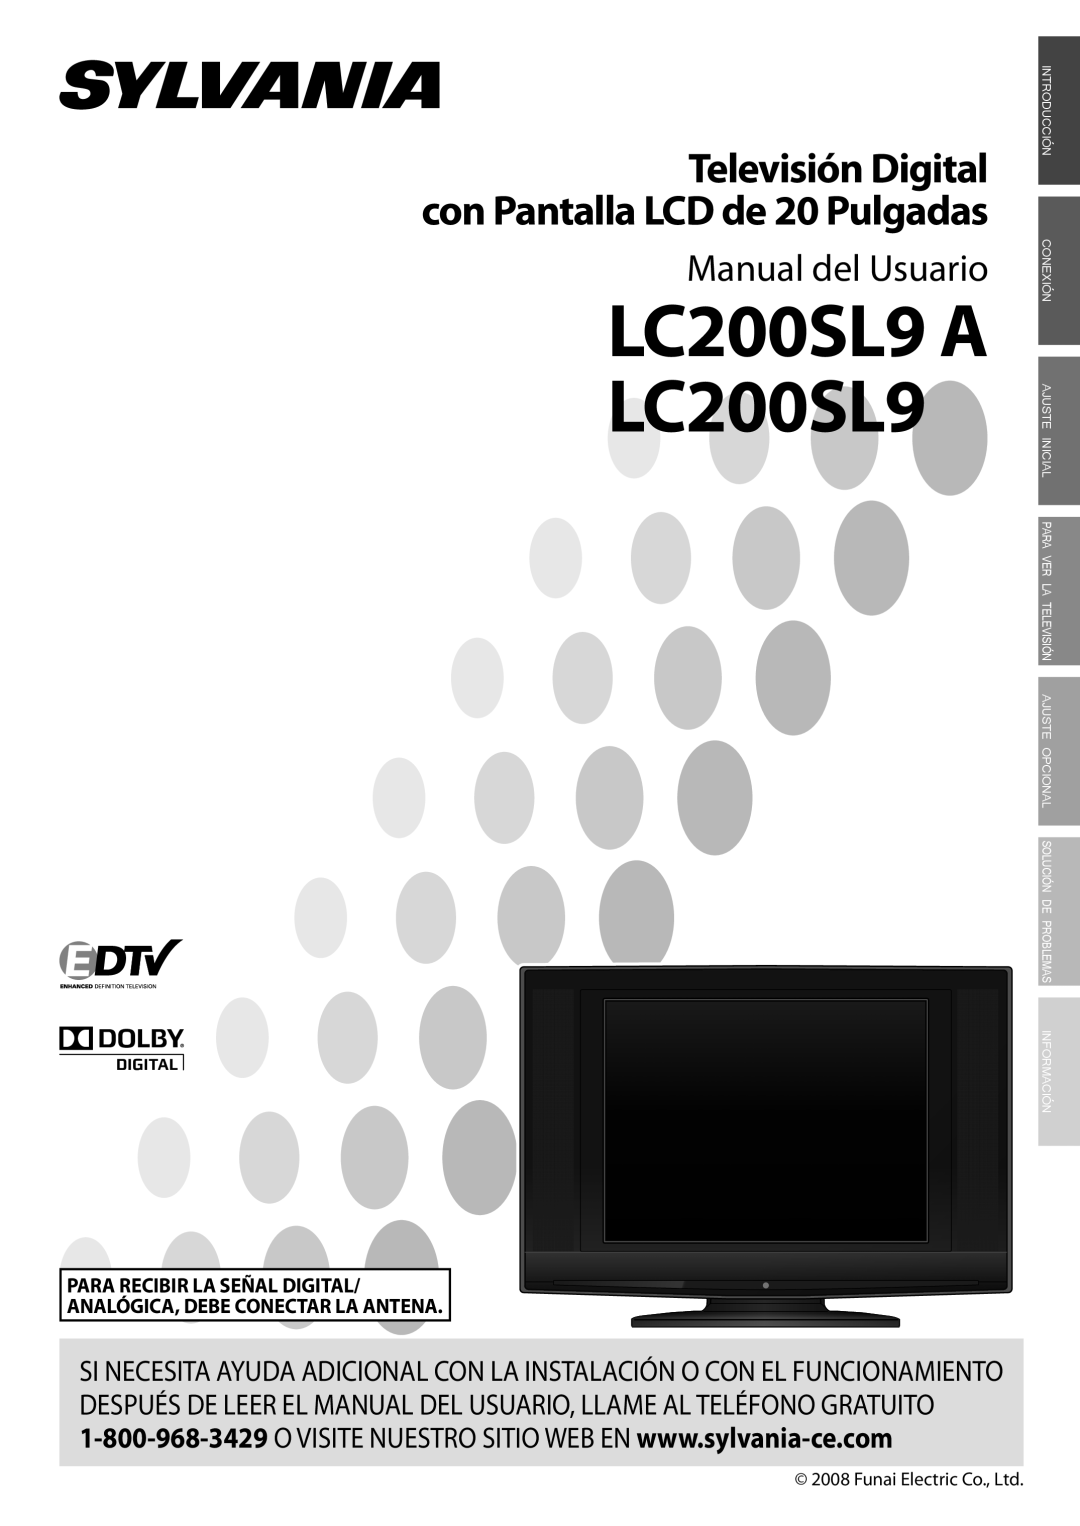 Sylvania LC200SL9 A owner manual Manual del Usuario, Televisión Digital con Pantalla LCD de 20 Pulgadas 